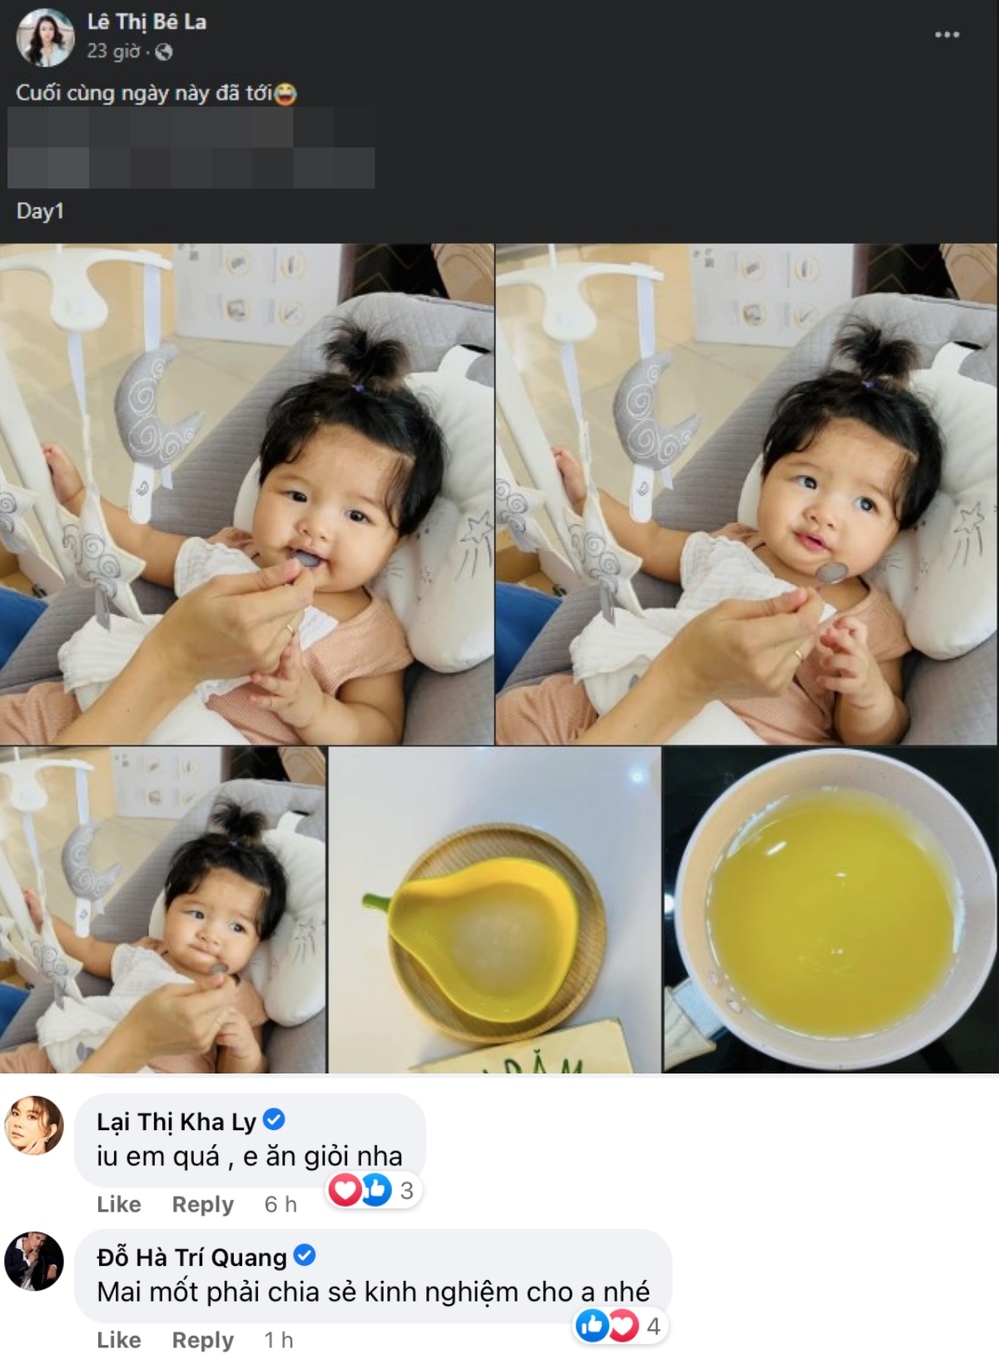  
Nam diễn viên xin típ chăm sóc con nhỏ của Lê Bê La. (Ảnh: Facebook Lê Thị Bê La)